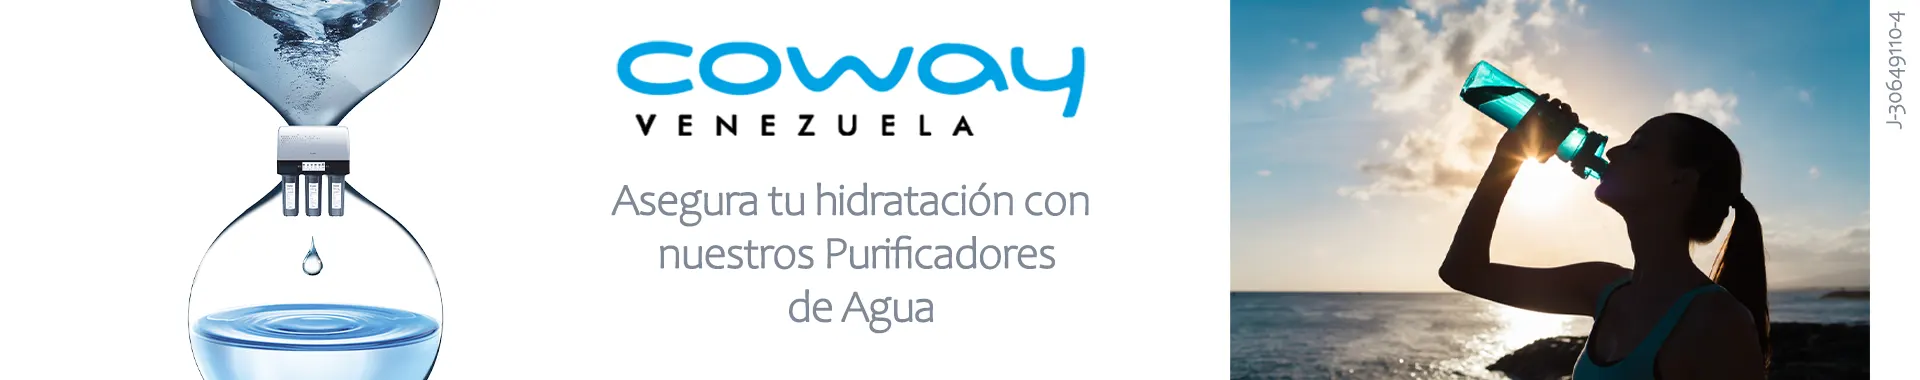 Imagen 4 del perfil de Coway Venezuela